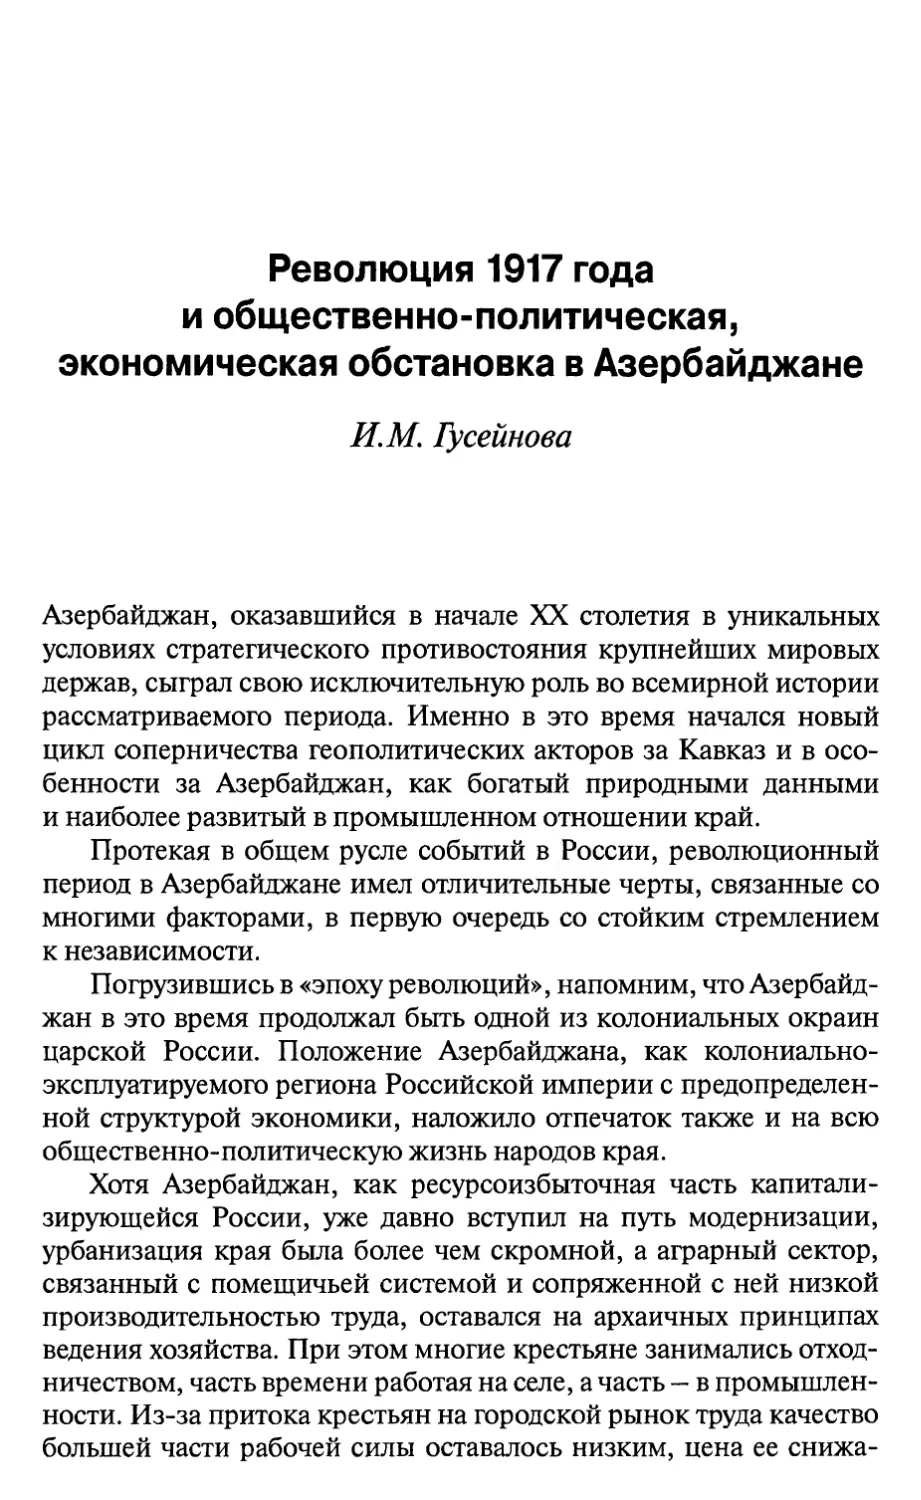 Гусейнова И.М. Революция 1917 года и общественно-политическая, экономическая обстановка в Азербайджане